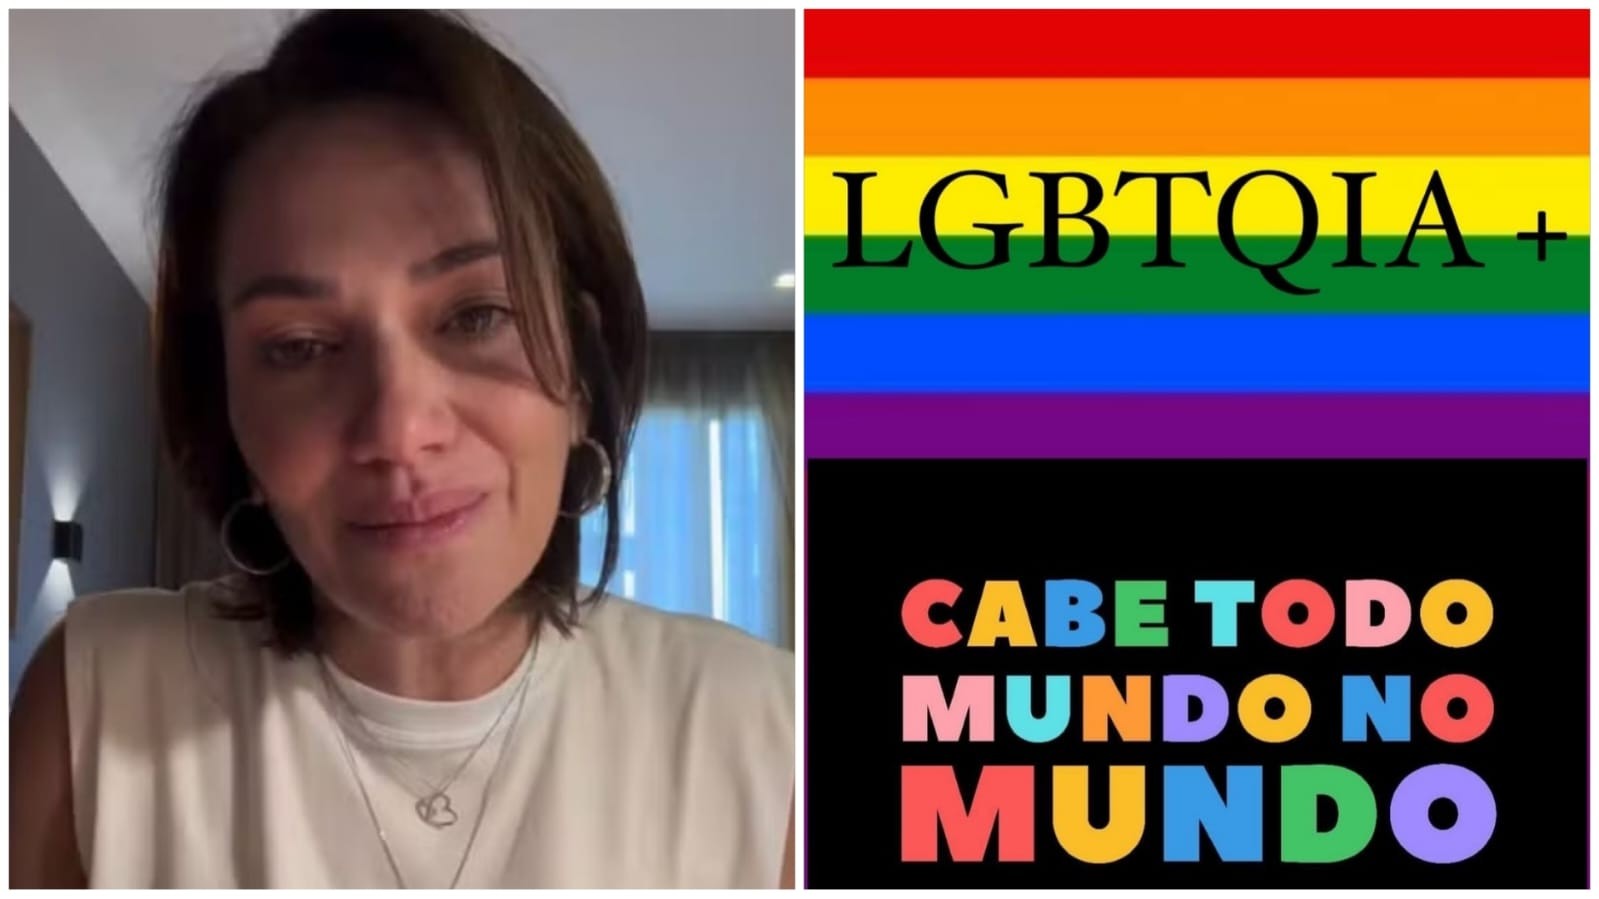 Mãe que criou campanha para conscientizar sobre síndrome de Down é criticada após post contra LGBTfobia